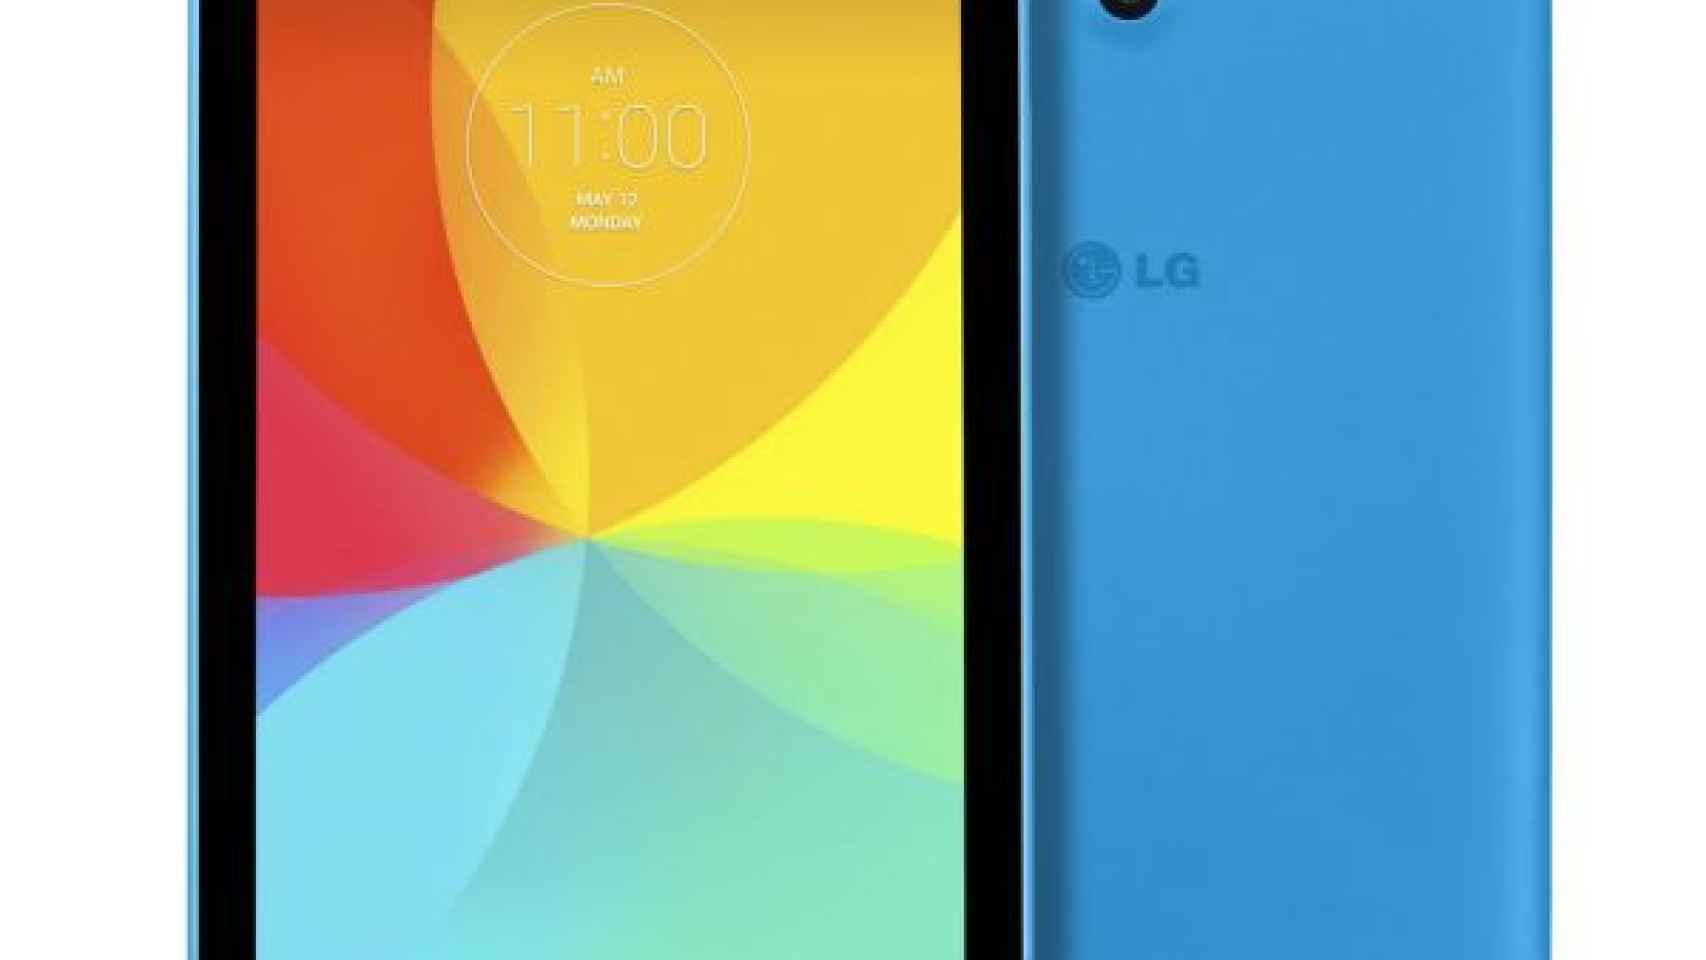 LG G Pad 7.0 ya muestra sus especificaciones técnicas, será una tablet de gama media-baja